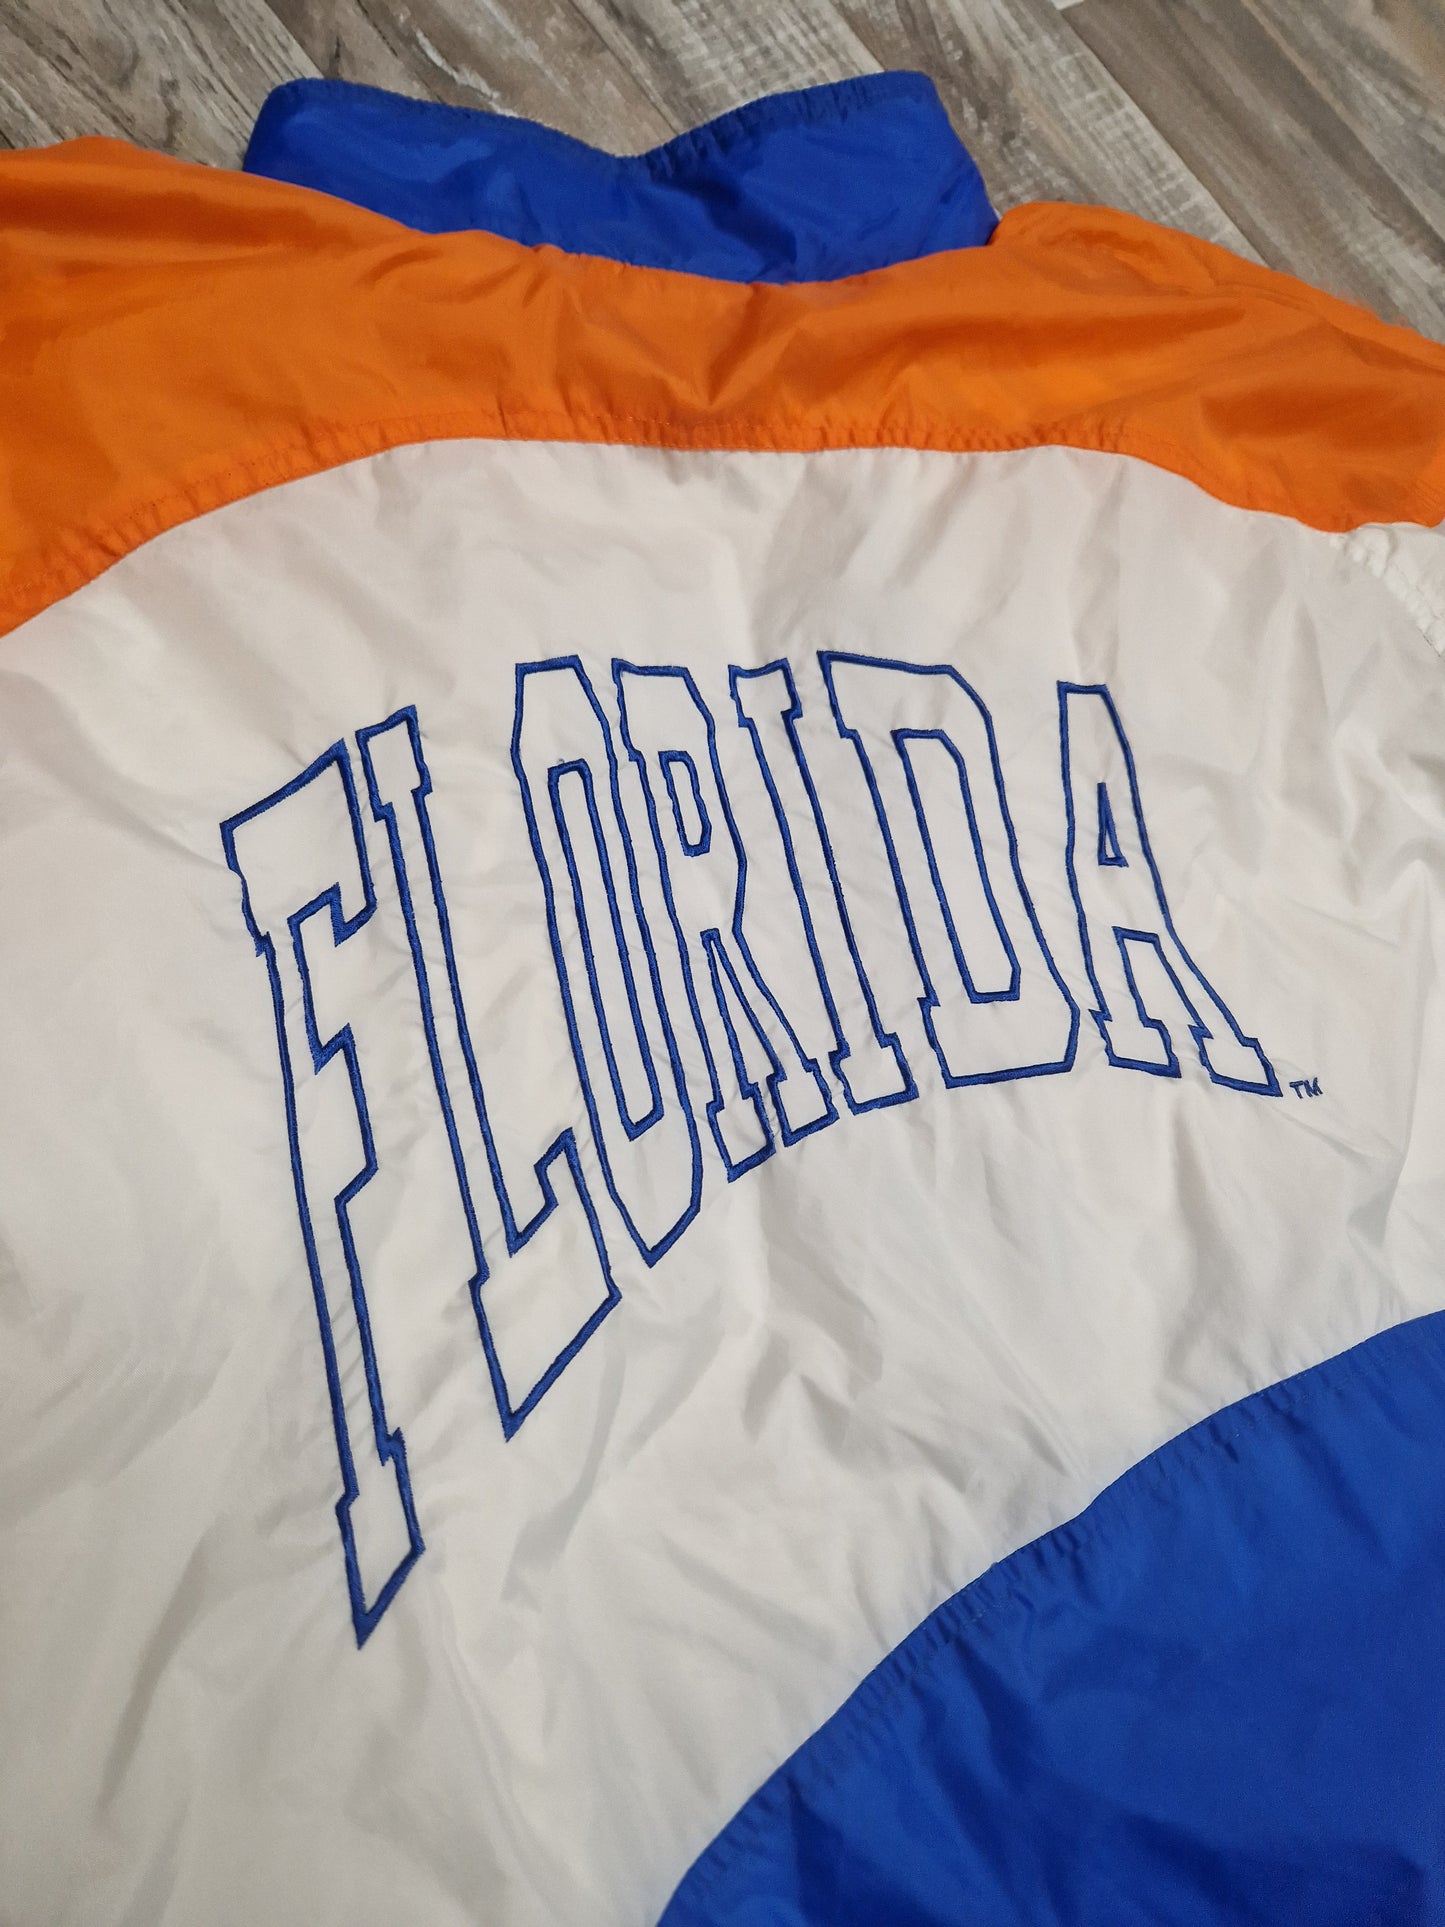 Florida Gators Jacket Size XL